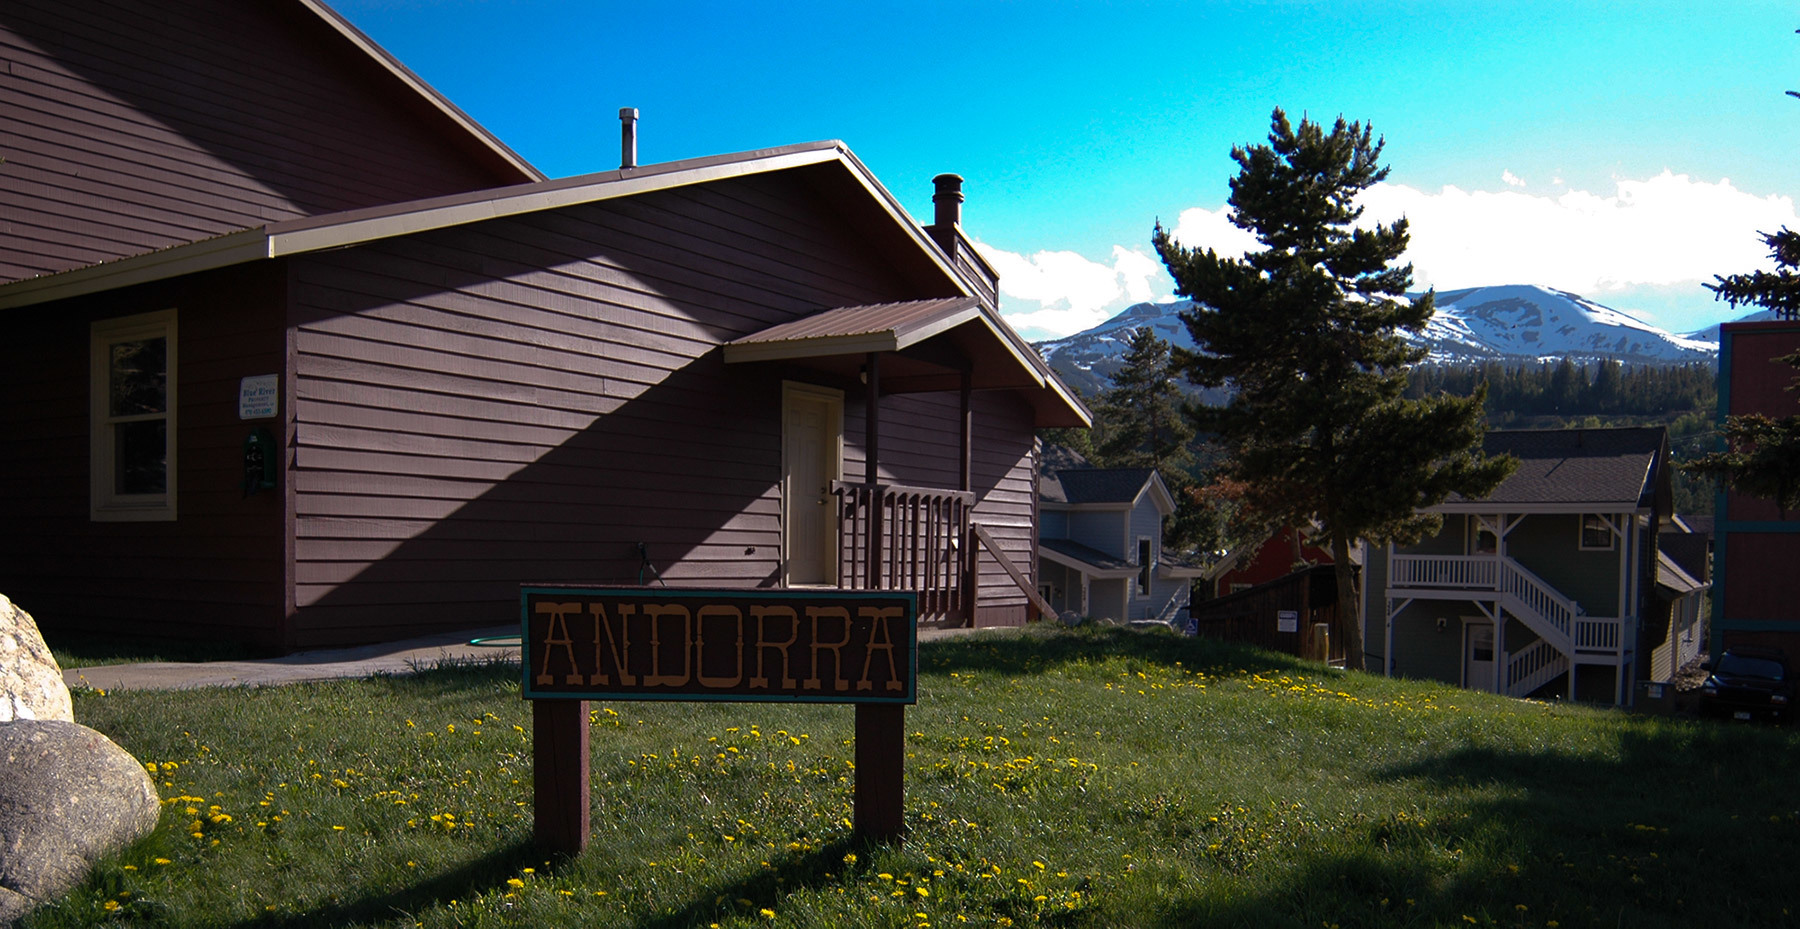 Andorra Condominiums Condos For Sale In Breckenridge CO